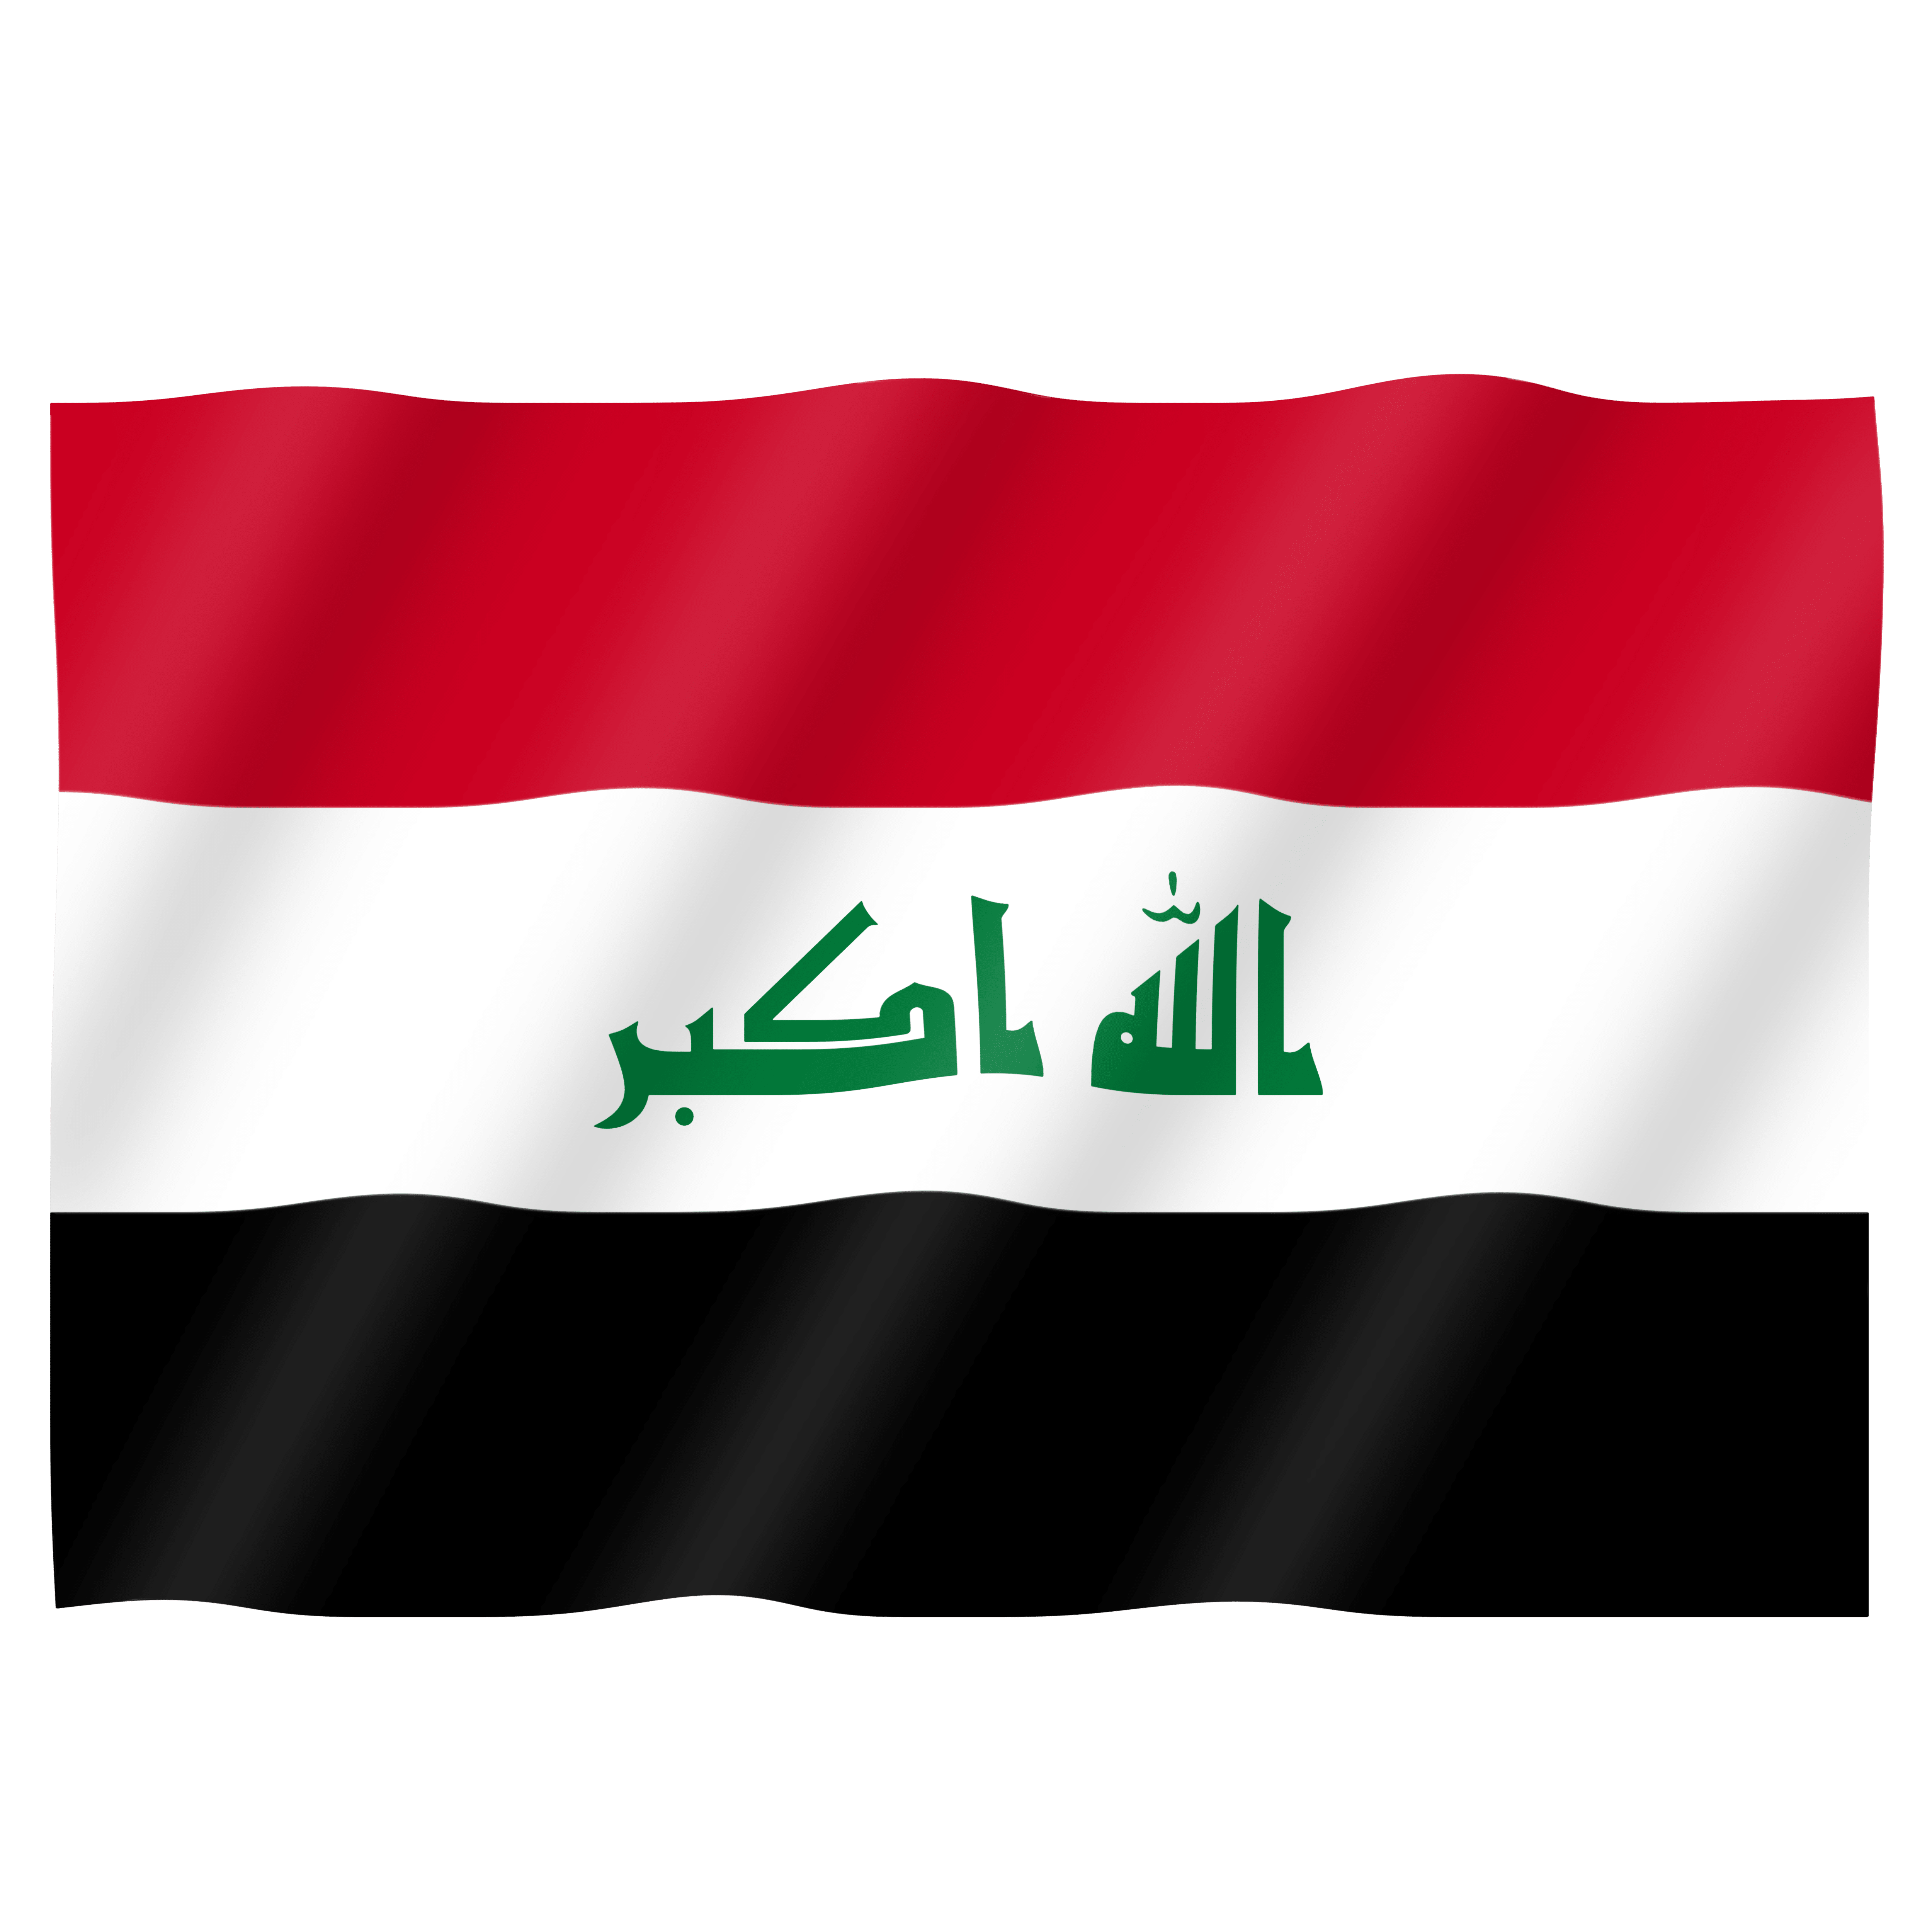 عکس پرچم عراق با کیفیت